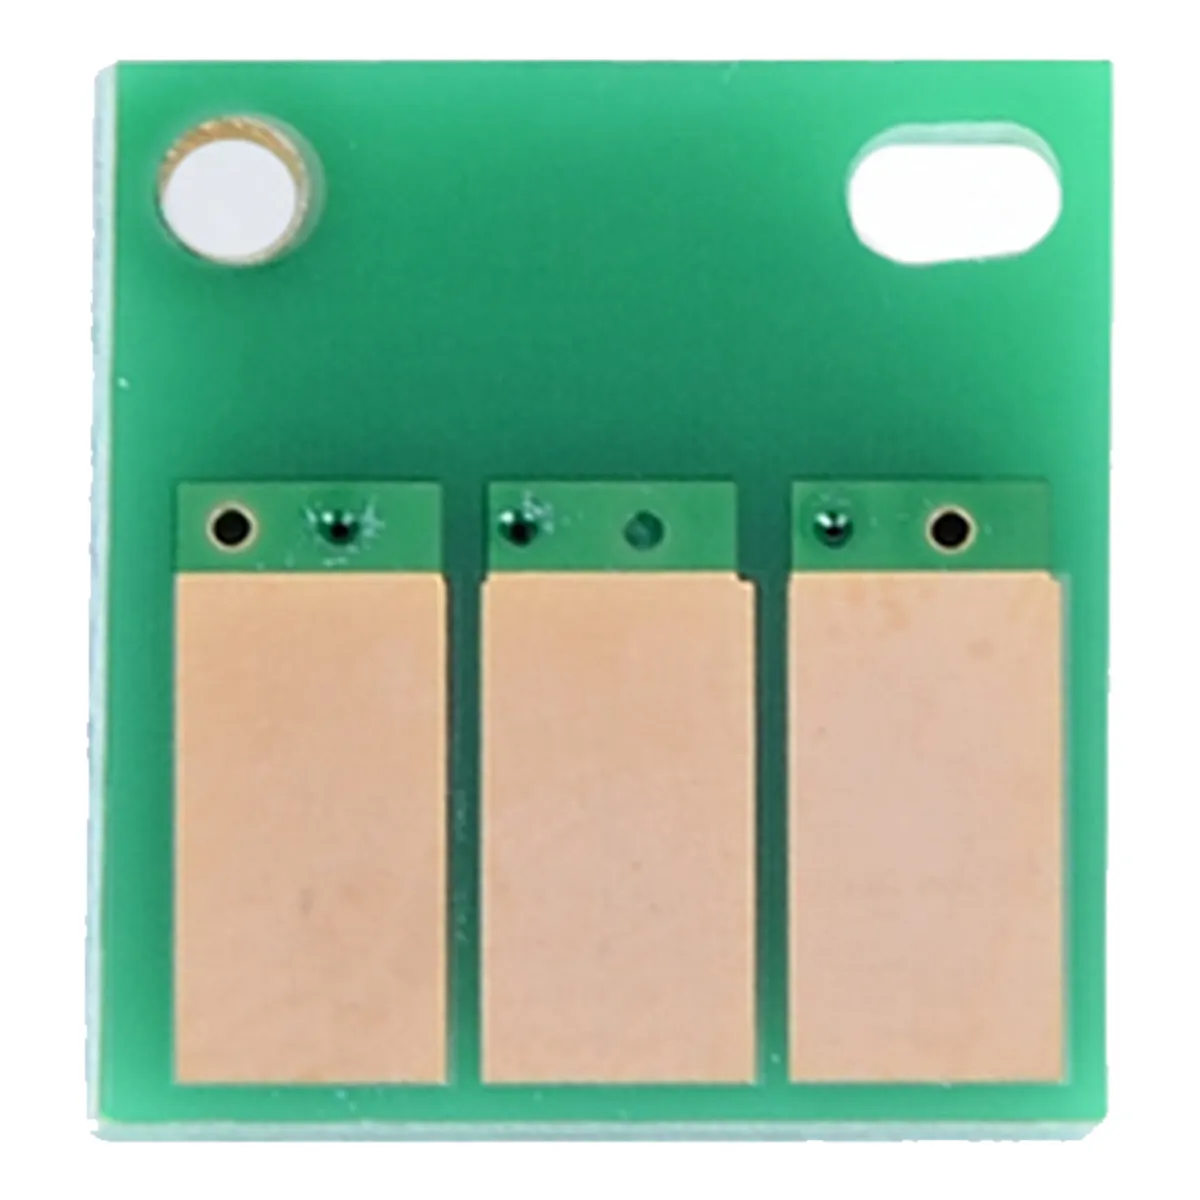 IU chip für Konica Minolta Bizhub C220/280/360/C7722 Aficio MD-D400/401, c224/224e/284e/364e/C454e/554e/55